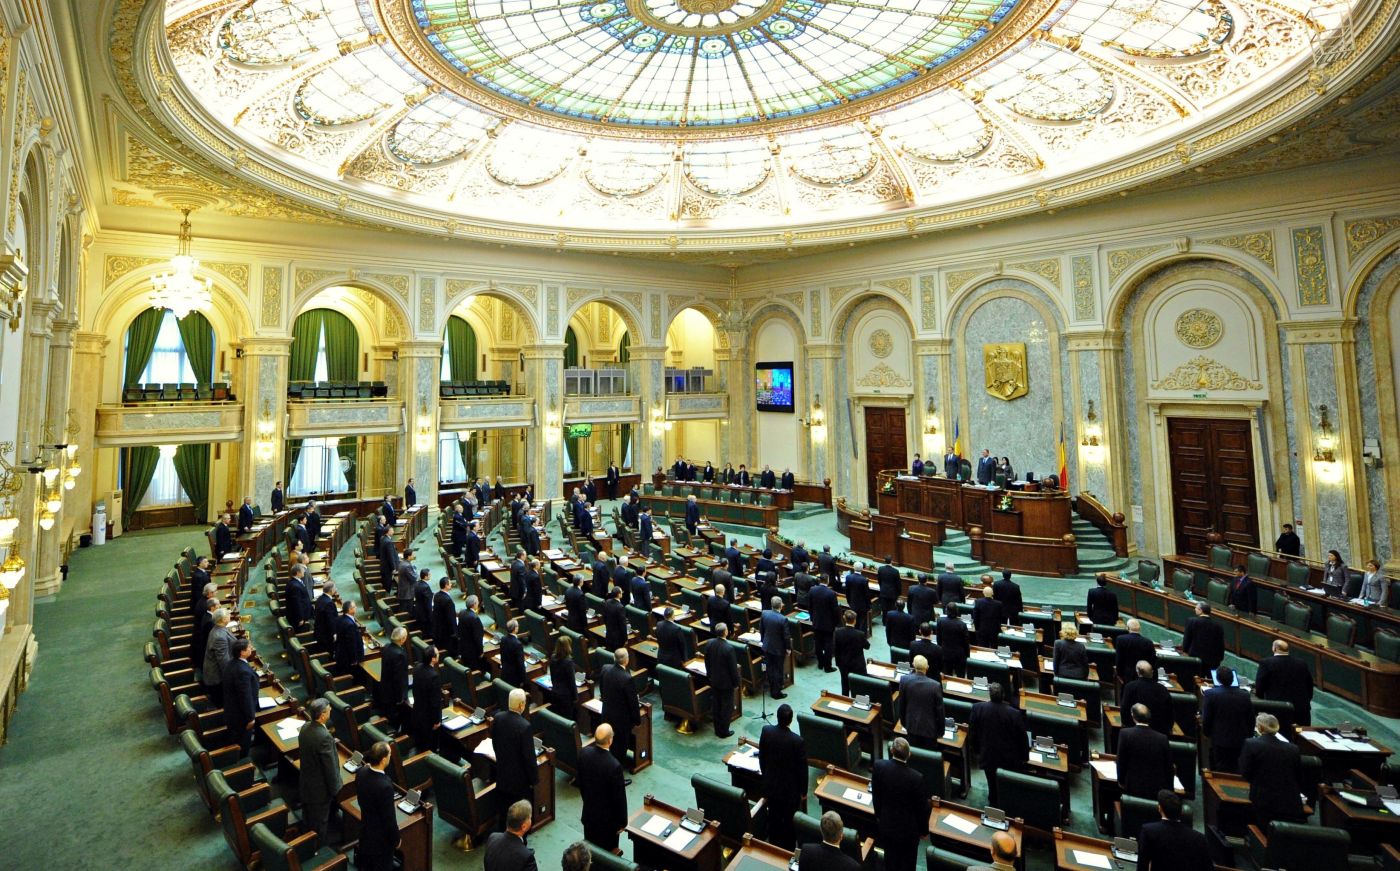 Senatul României a respins proiectul privind Statutul de autonomie a Ţinutului Secuiesc